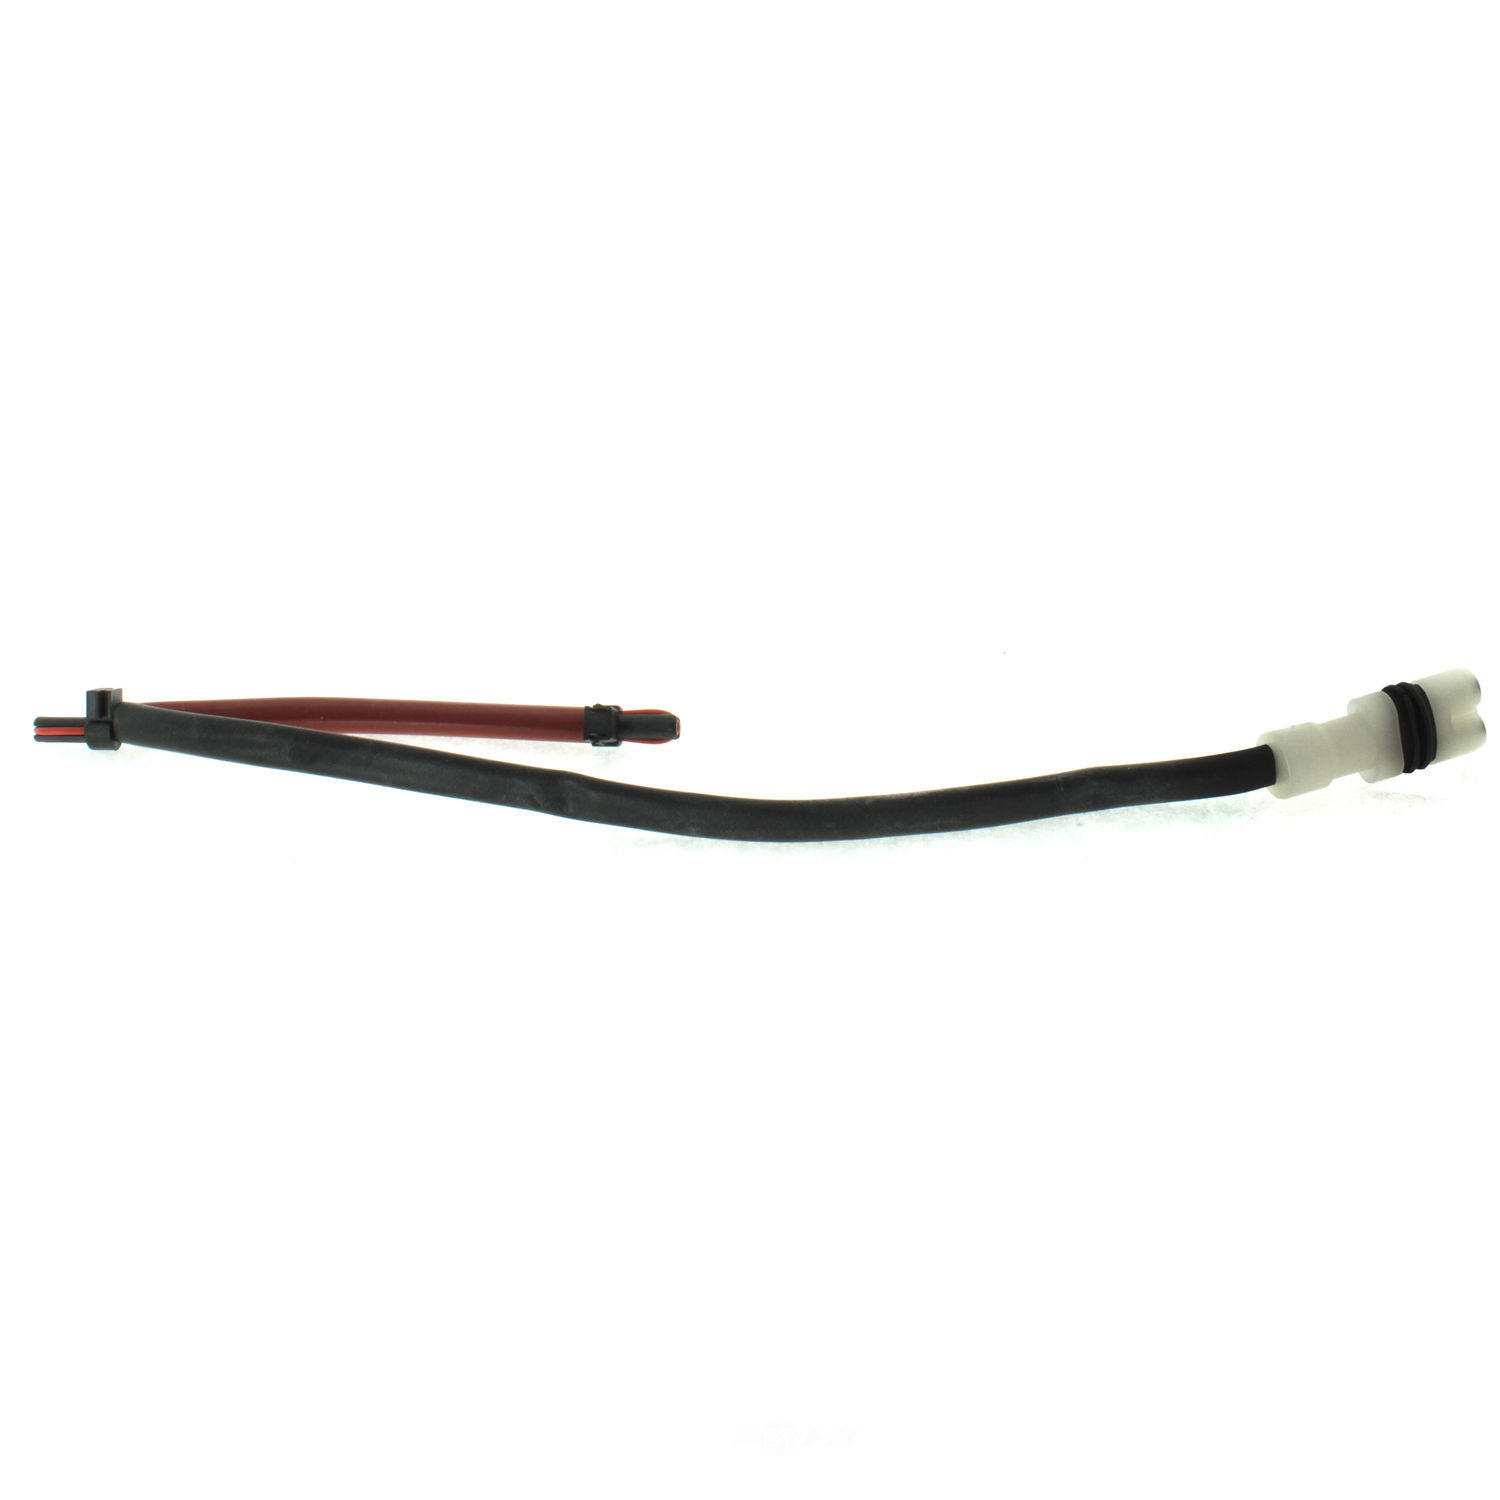 CENTRIC PARTS - Centric Premium Brake Pad Sensor Wires - CEC 116.37028